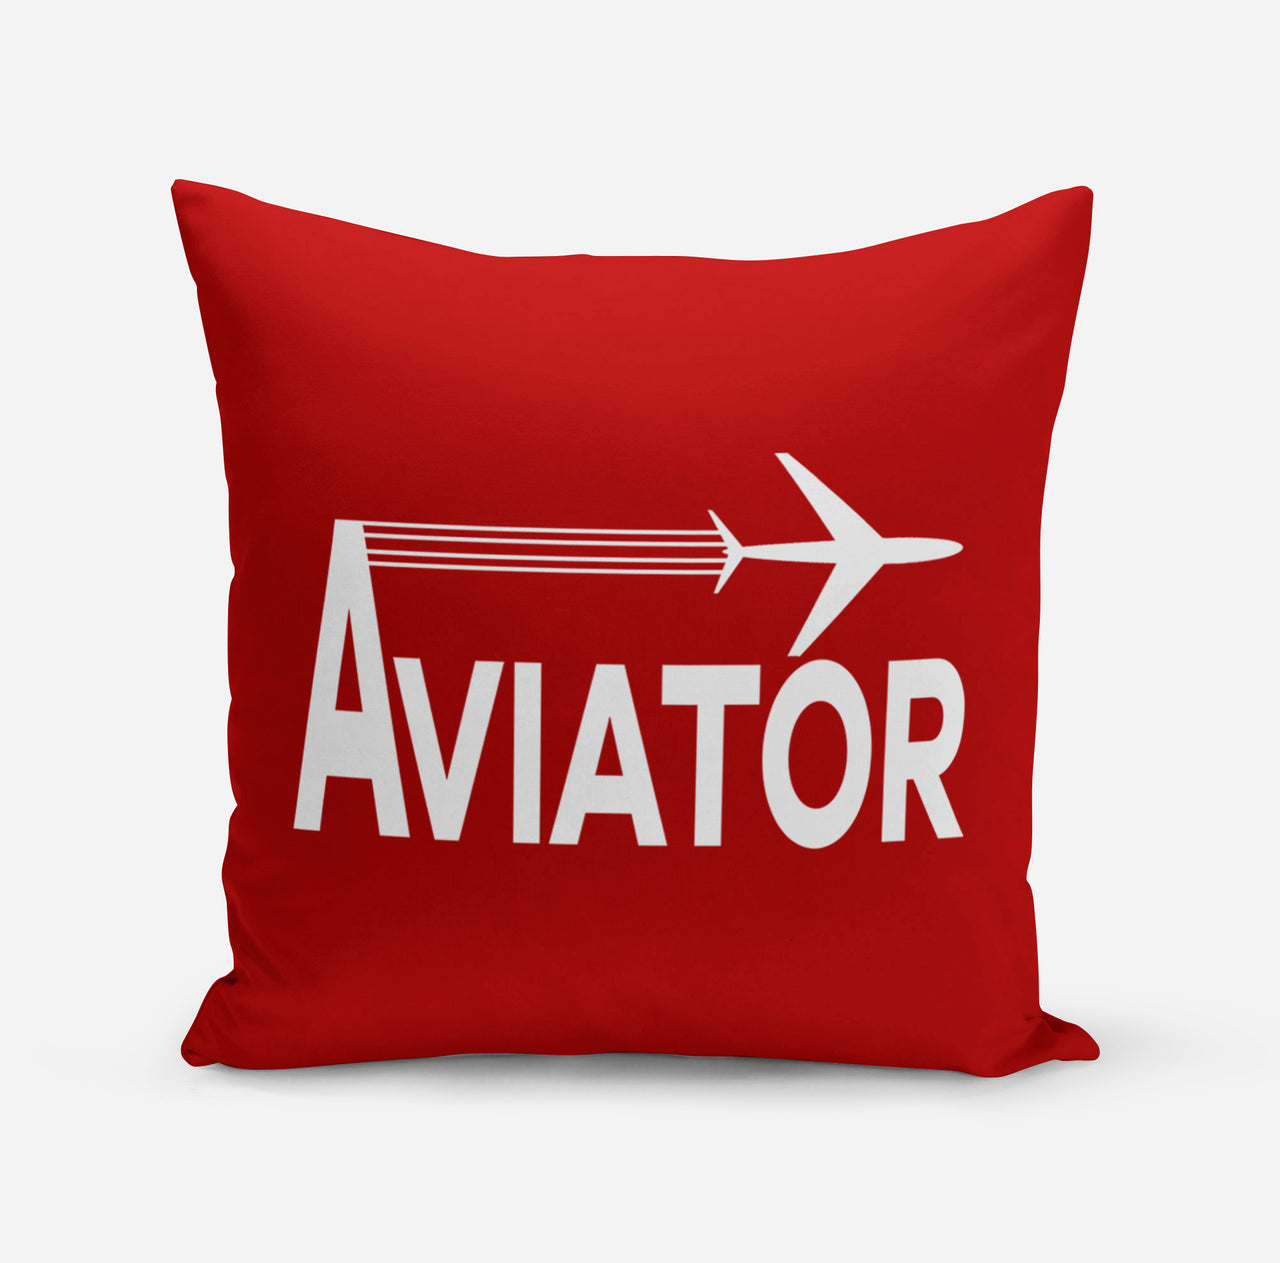 Aviator Designed Pillows